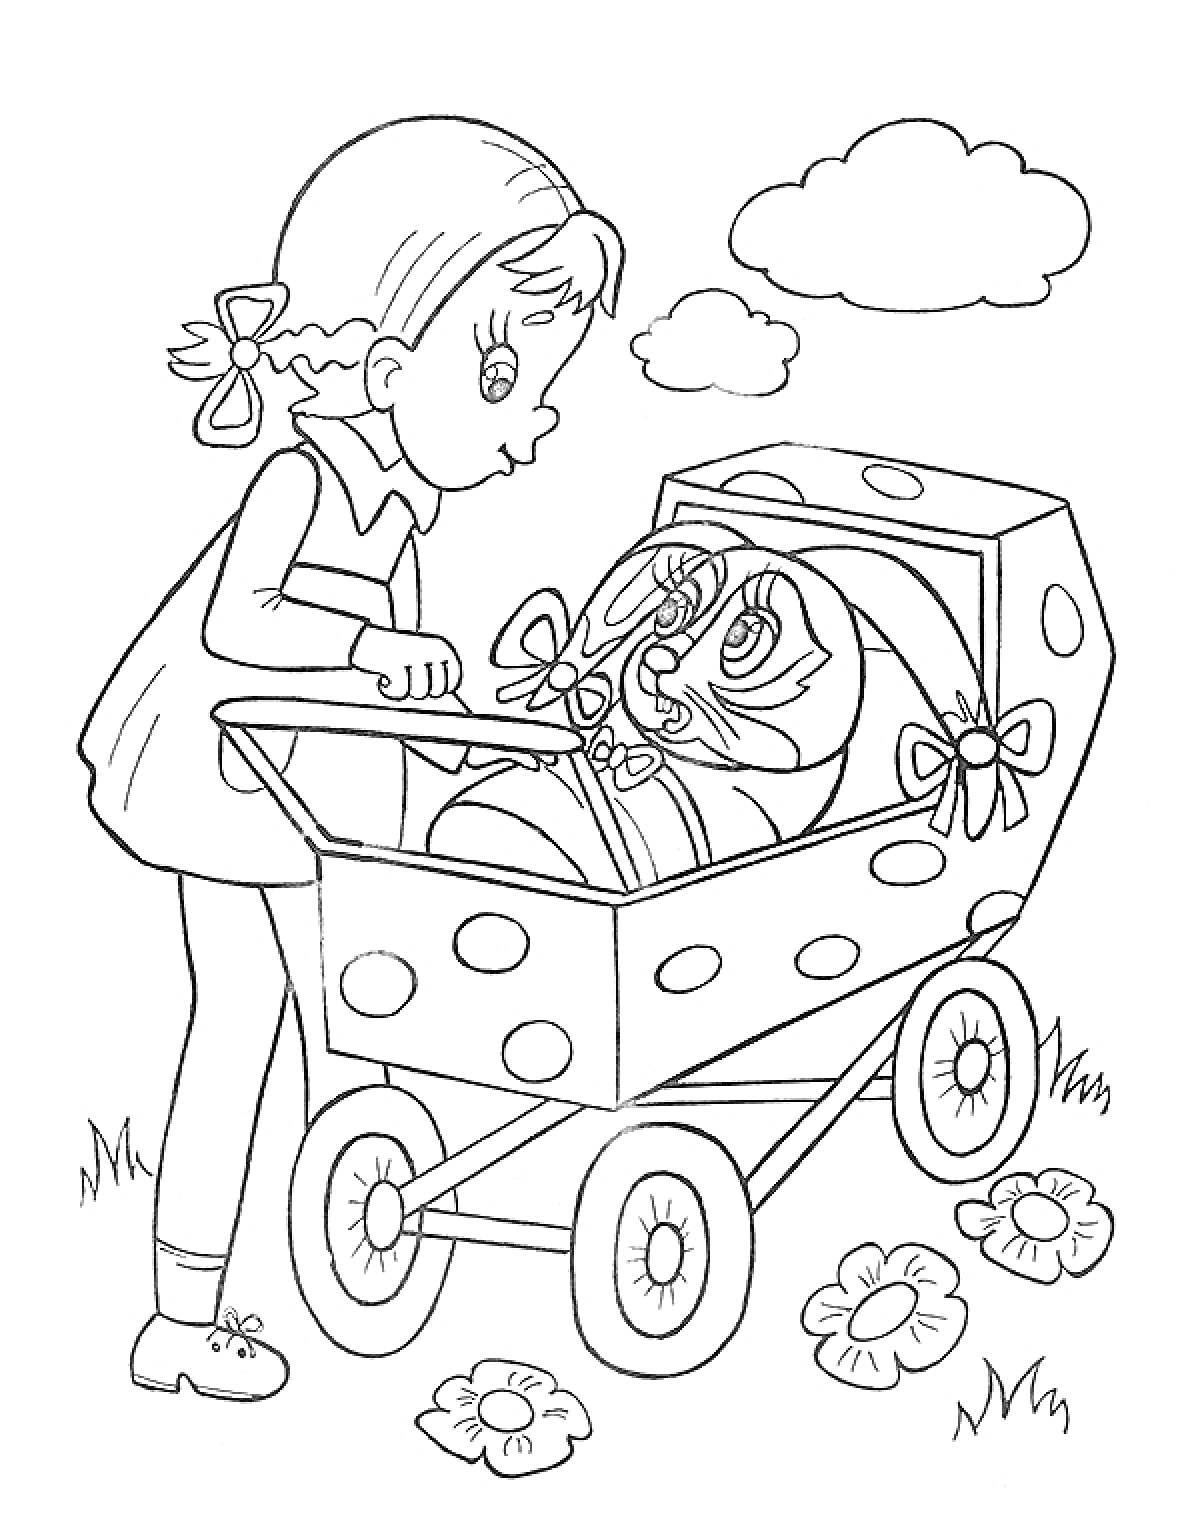 Раскраска Девочка с бантиками в волосах толкает коляску с котенком, вокруг цветы и облака